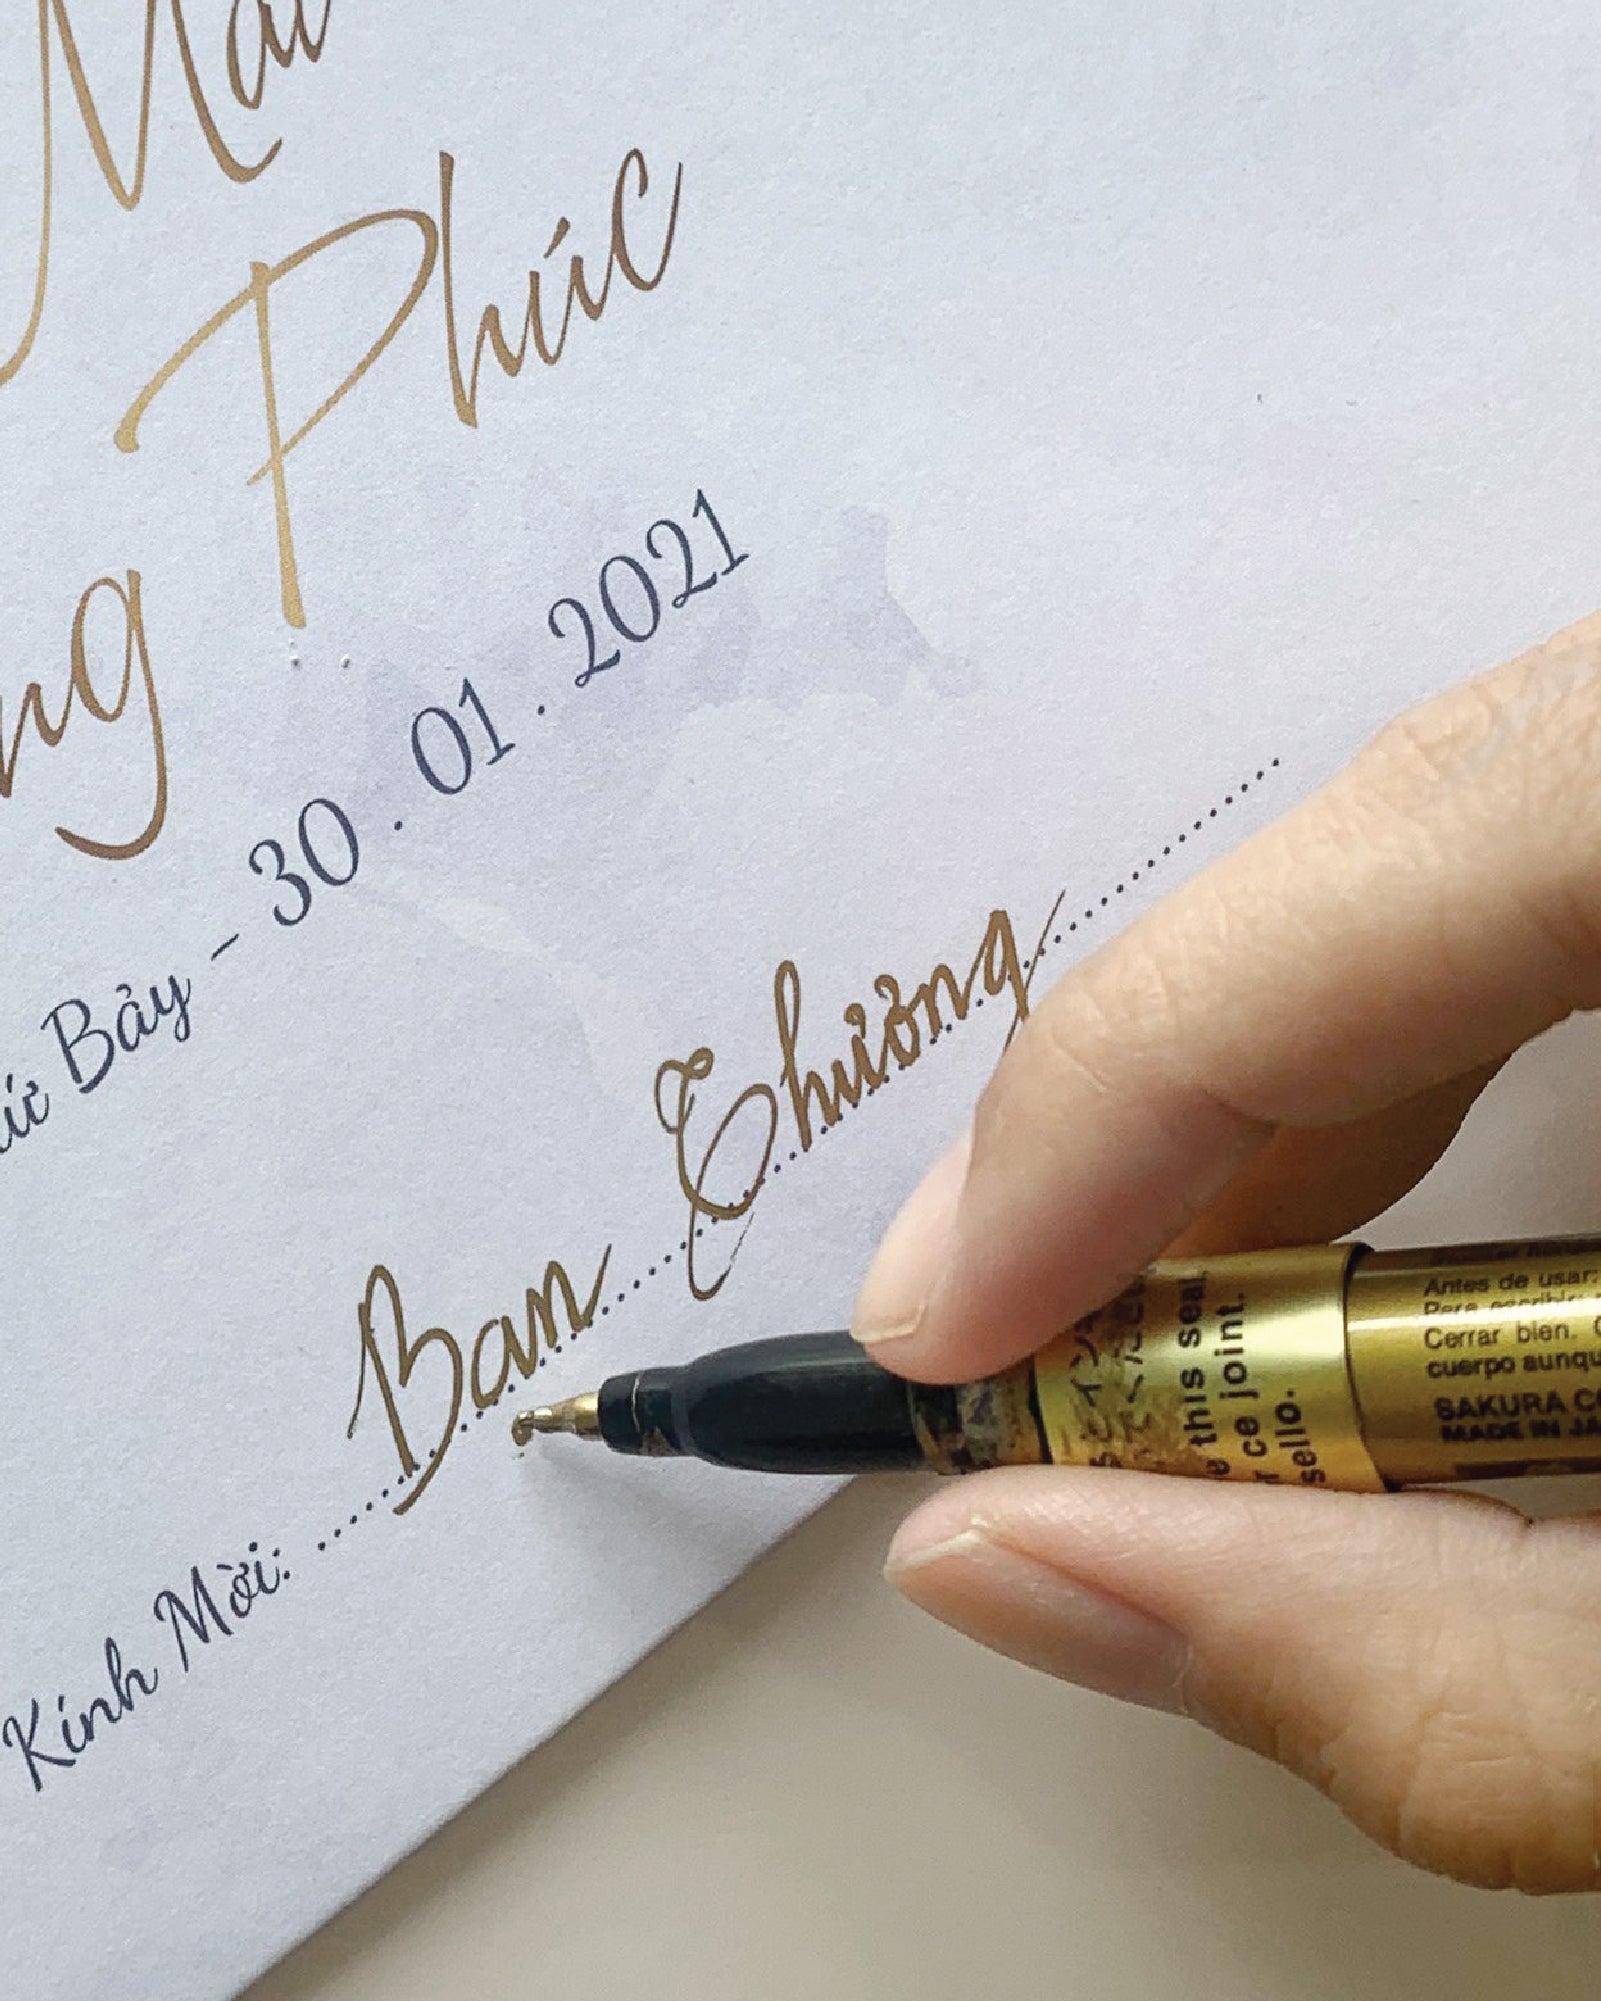 Bút Kim Tuyến: Bút Kim Tuyến là một loại bút đầy cảm hứng mang đến cho bạn sự tự do để tạo ra các tác phẩm nghệ thuật đẹp mắt nhất. Với chiếc bút này, bạn có thể viết, vẽ và sáng tạo vô tận theo cách của riêng mình. Hãy trang bị cho mình một chiếc bút Kim Tuyến và bắt đầu khám phá văn hóa nghệ thuật Việt Nam.